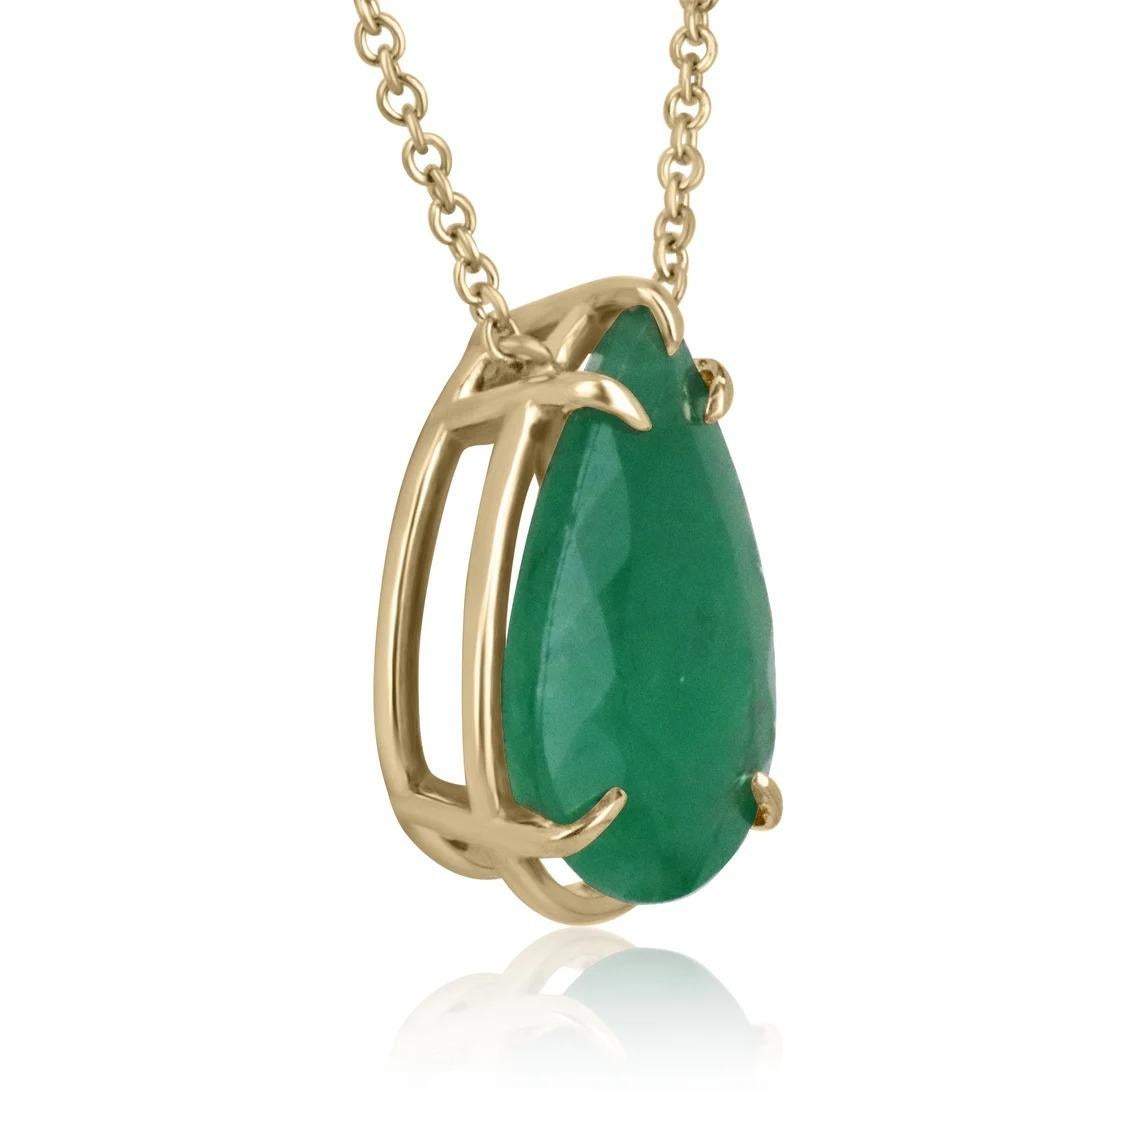 Gezeigt wird eine klassische Solitär-Halskette mit brasilianischem Smaragd aus 14 Karat Gelbgold. Dieser wunderschöne Solitärring trägt einen 9,30-karätigen Smaragd in einer Fünf-Zacken-Fassung. Dieser Edelstein ist vollständig facettiert und hat